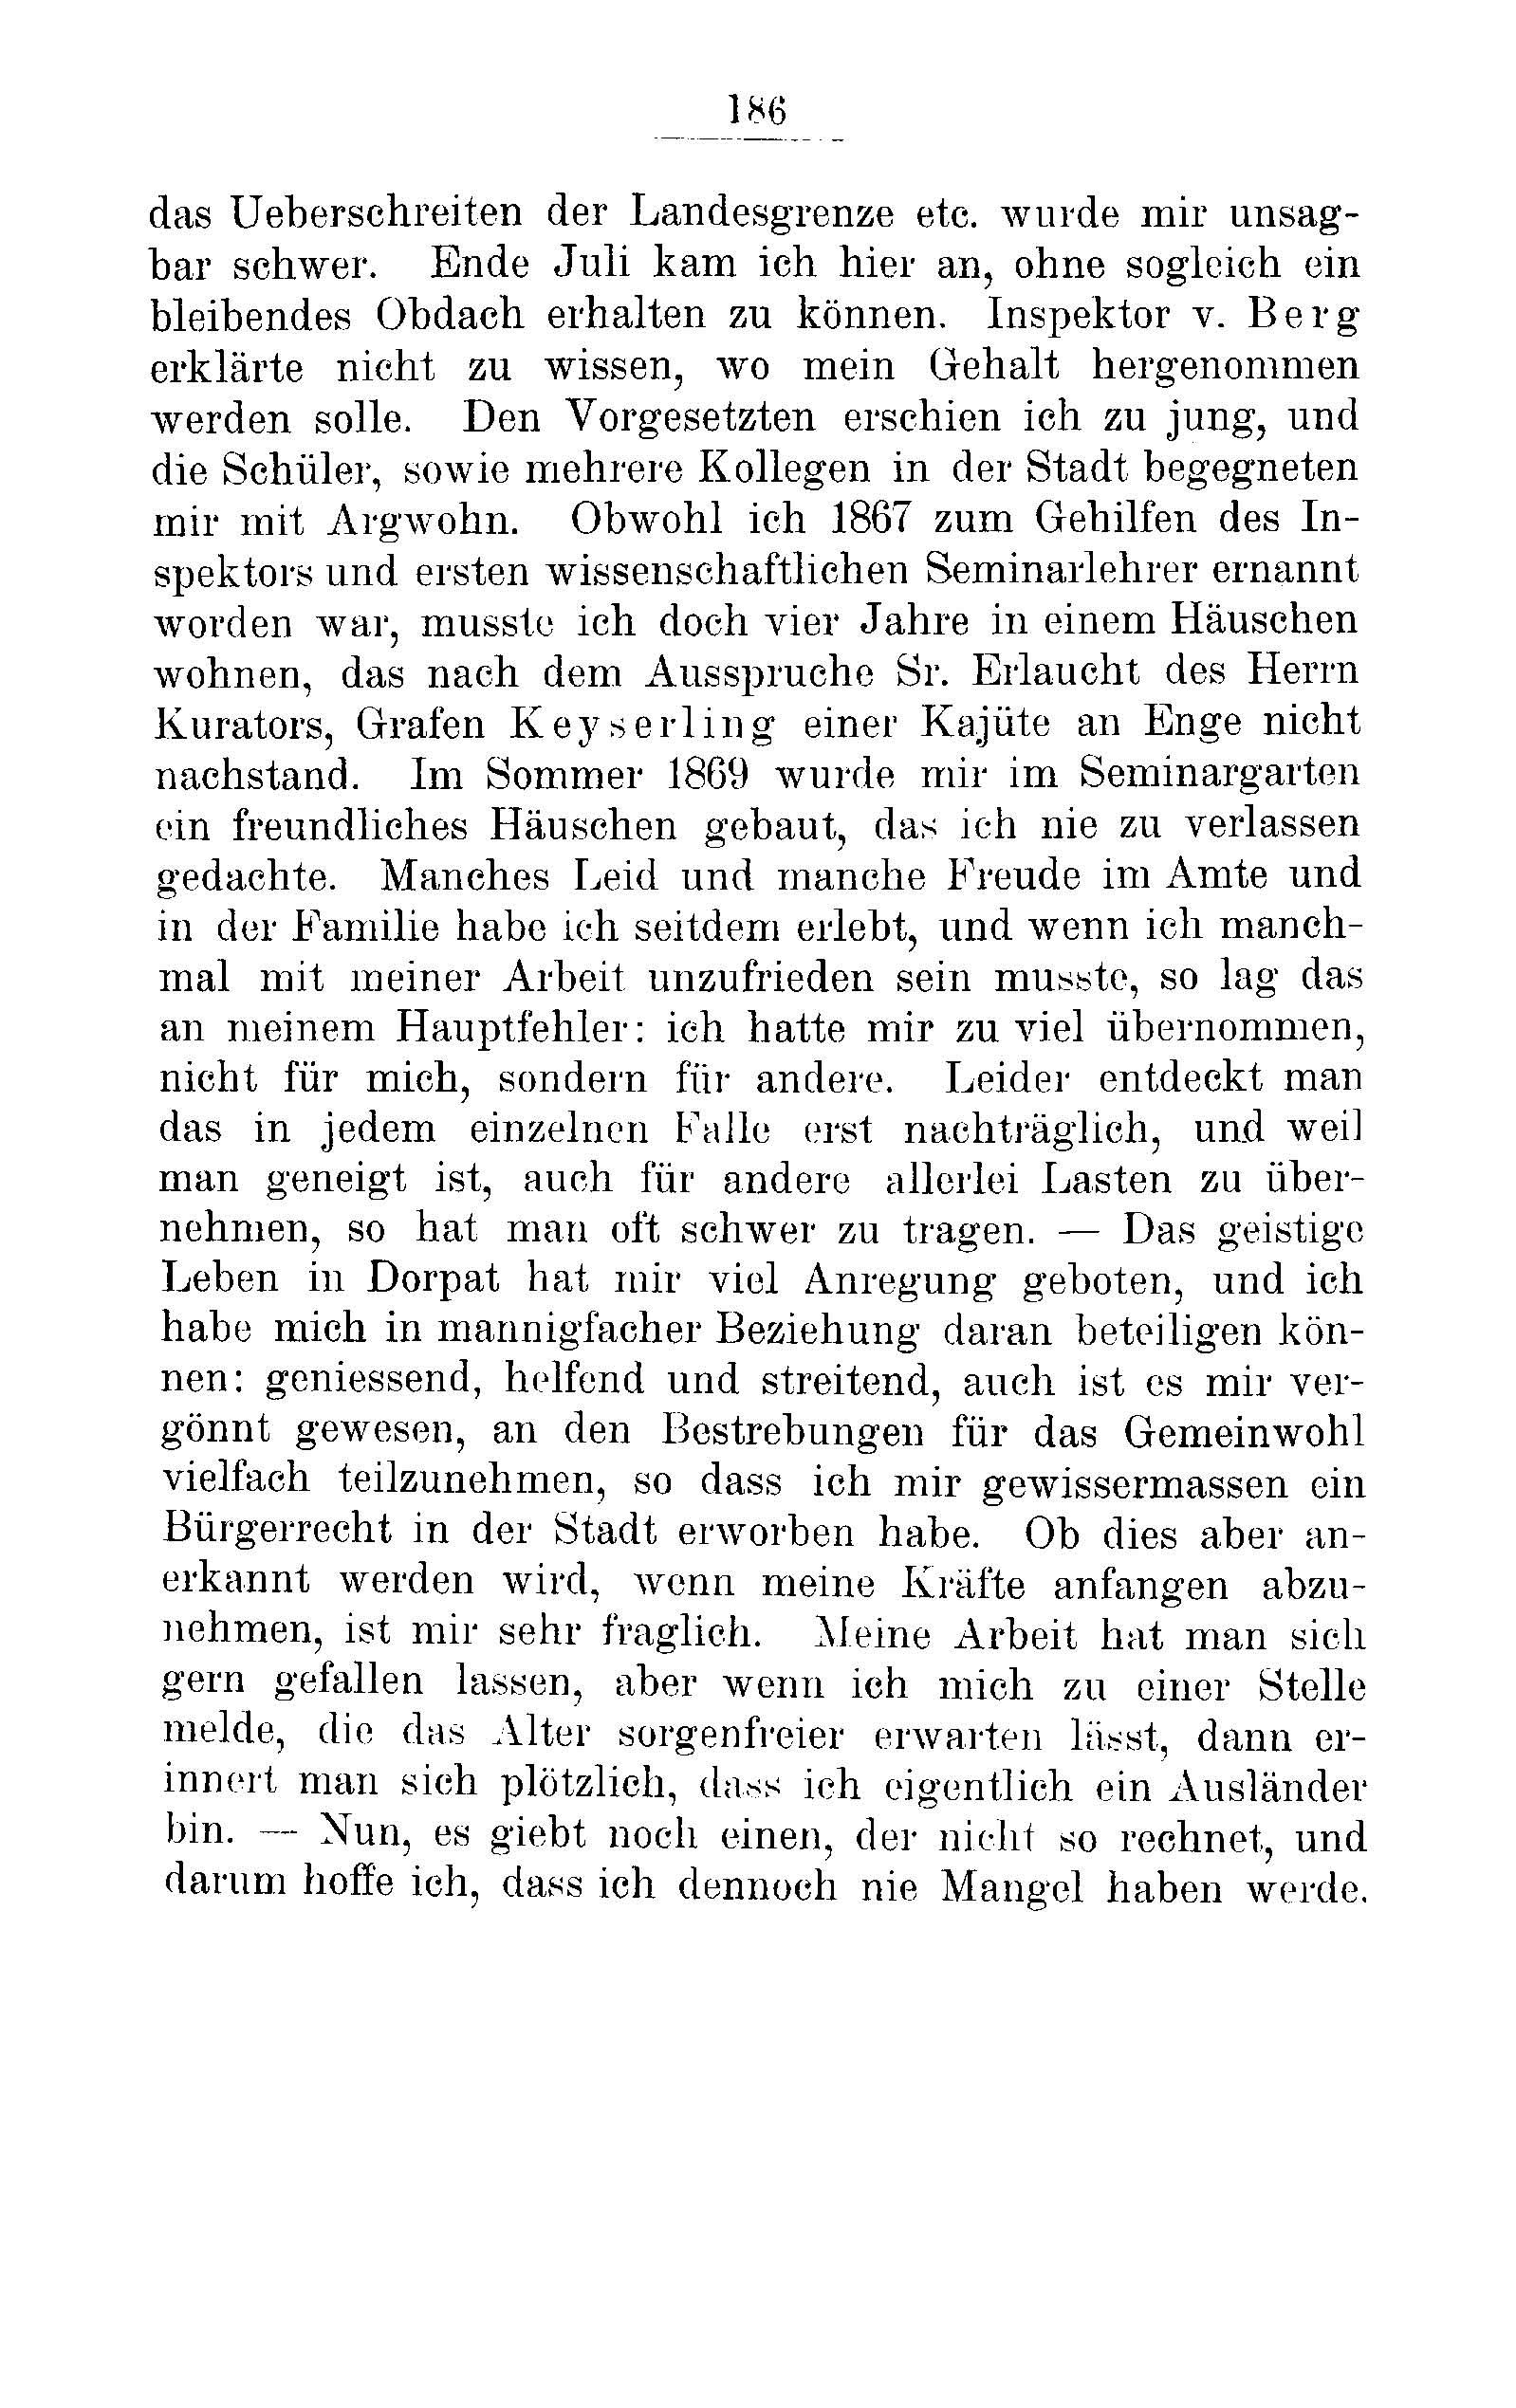 Das Erste Dorpatsche Lehrer-Seminar (1890) | 191. Põhitekst